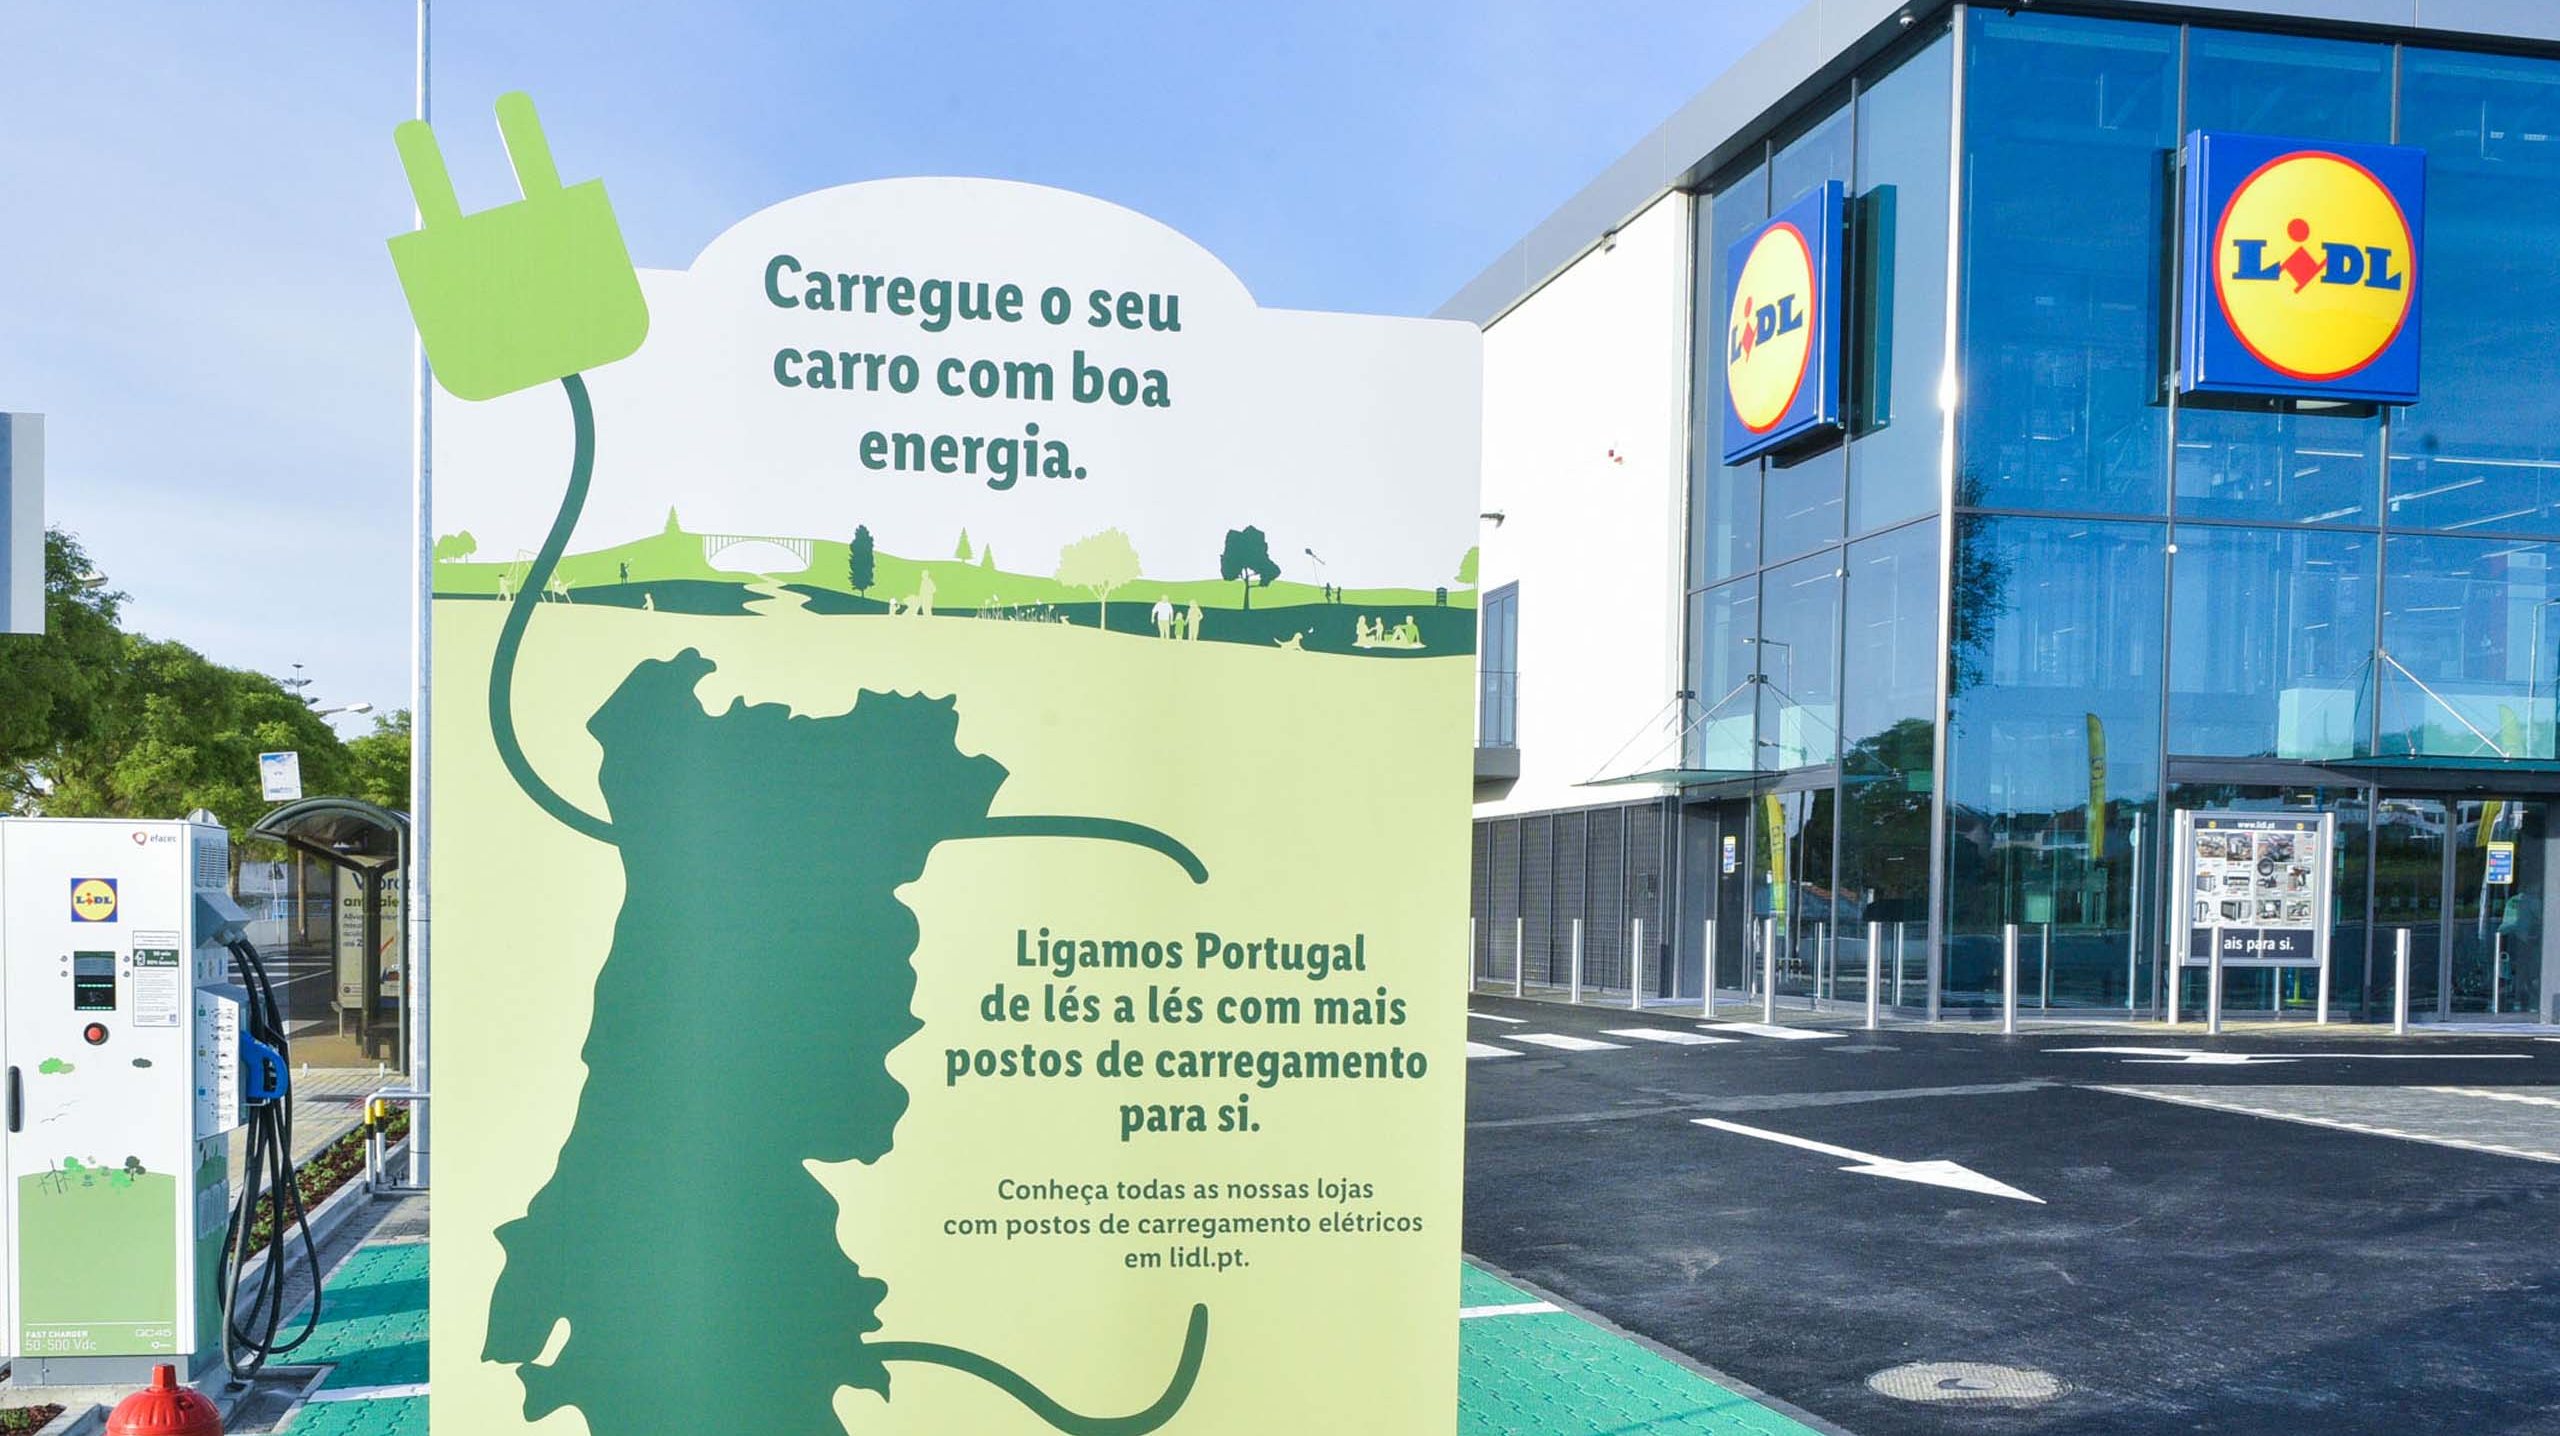 A cadeia de retalho, que possui mais de 260 lojas em Portugal, vai equipar uma centena com postos de carregamento para veículos eléctricos